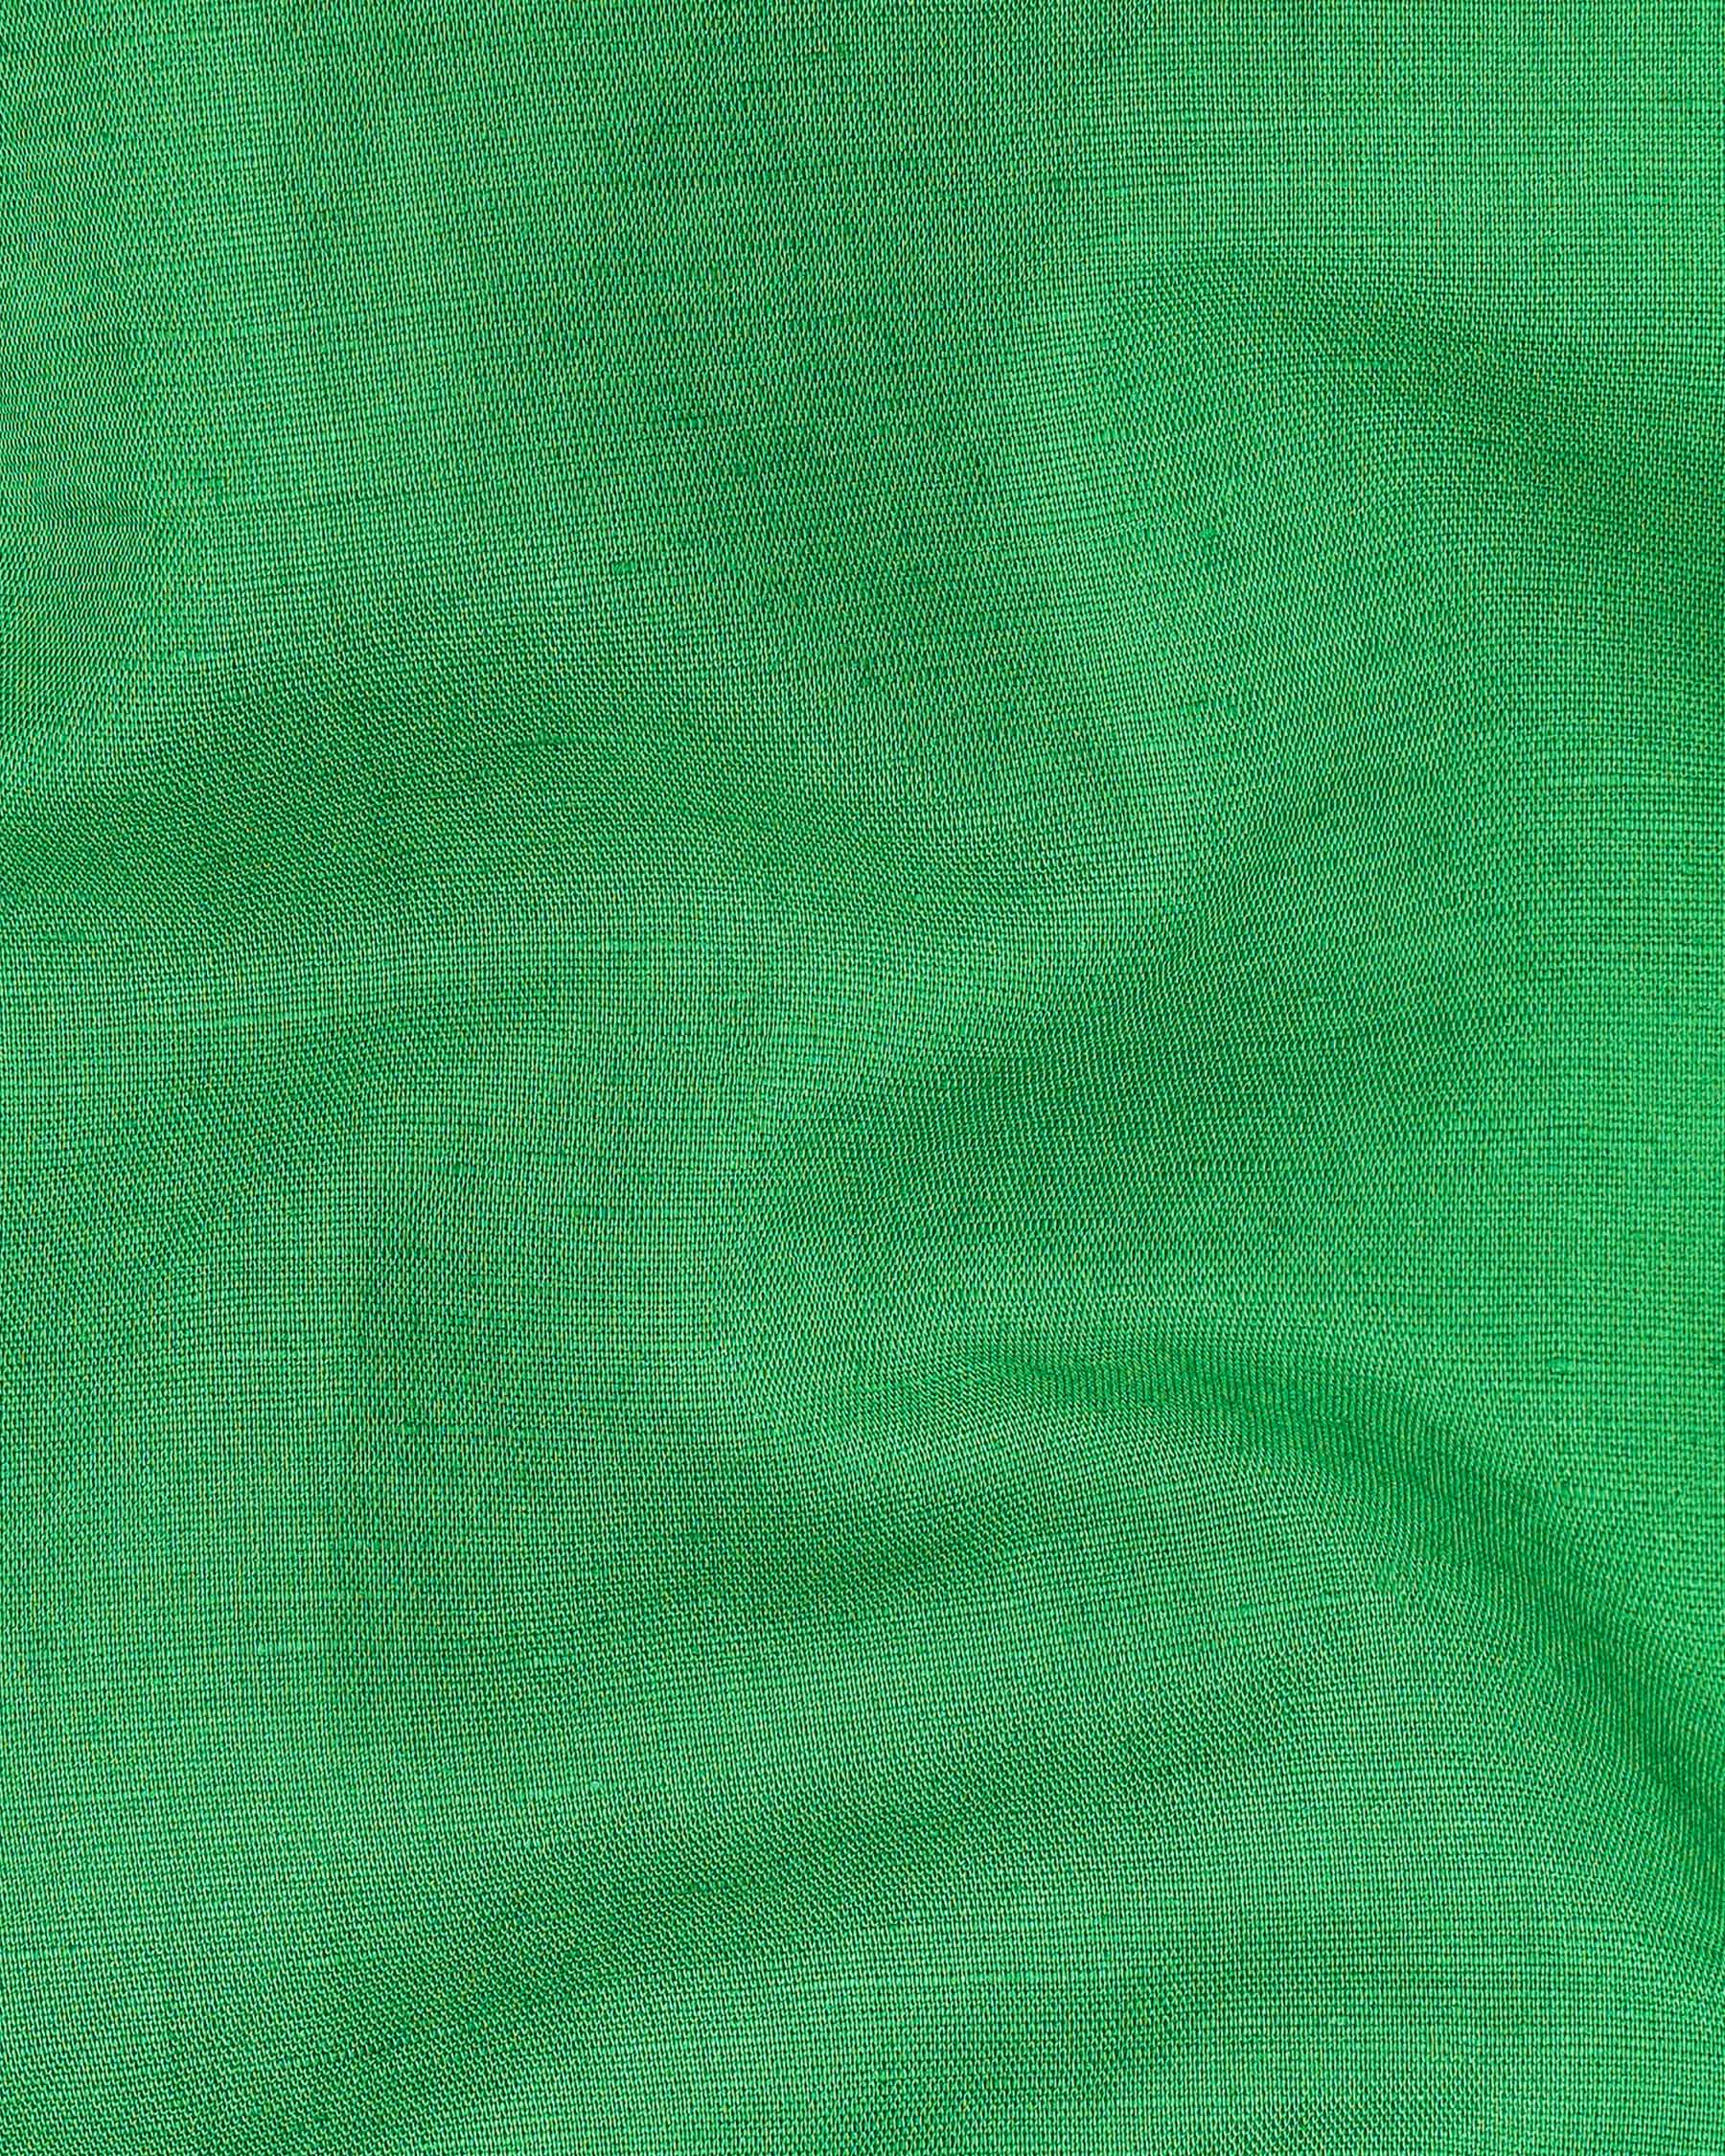 Salem Green Luxurious Linen Mandarin Collar Shirt 7944-M-P-38, 7944-M-P-H-38, 7944-M-P-39, 7944-M-P-H-39, 7944-M-P-40, 7944-M-P-H-40, 7944-M-P-42, 7944-M-P-H-42, 7944-M-P-44, 7944-M-P-H-44, 7944-M-P-46, 7944-M-P-H-46, 7944-M-P-48, 7944-M-P-H-48, 7944-M-P-50, 7944-M-P-H-50, 7944-M-P-52, 7944-M-P-H-52